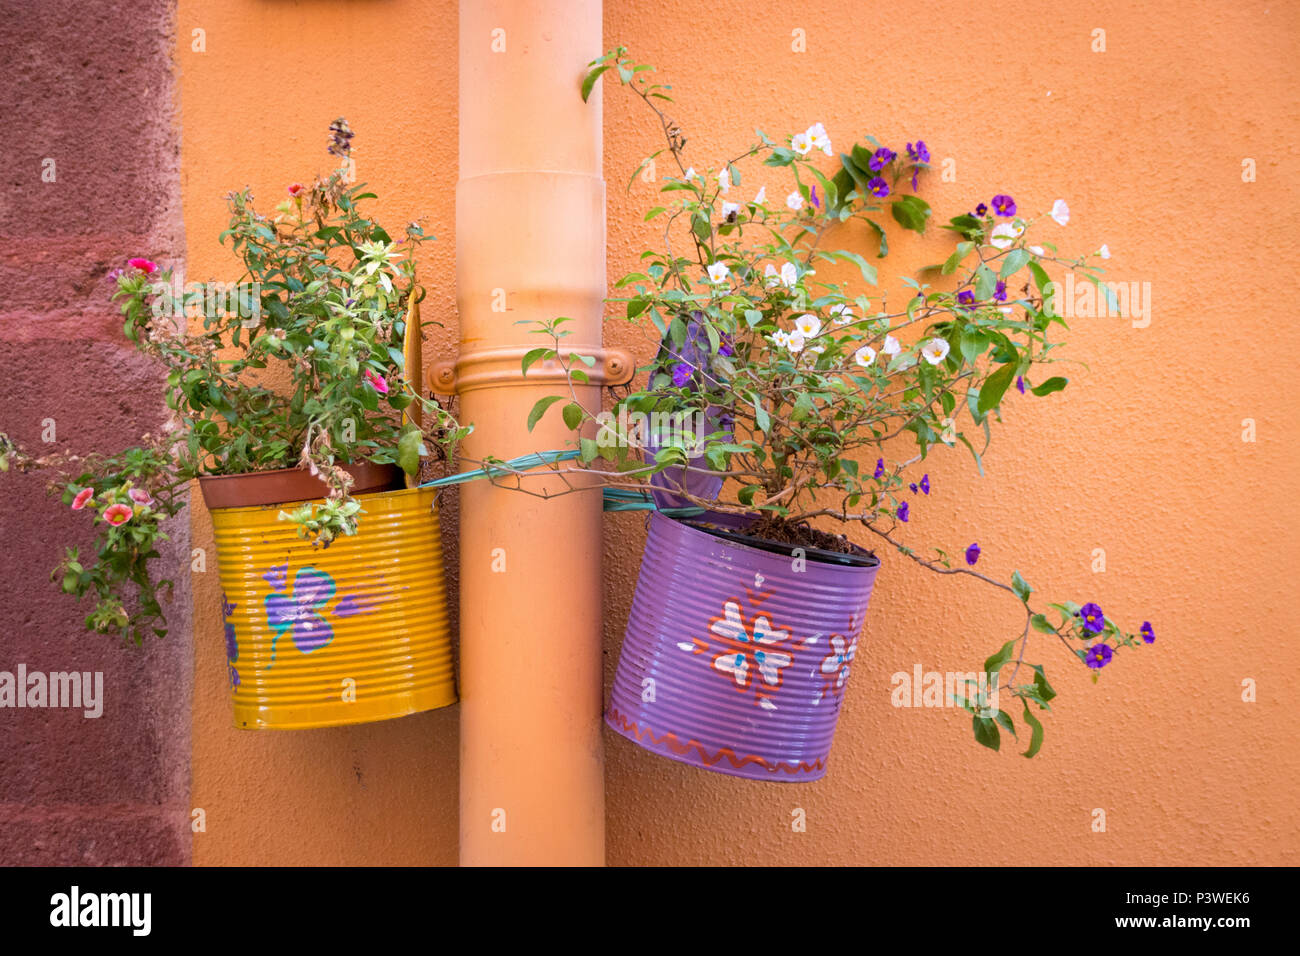 Eine bunte lackiert kann als kreativer hängender Blumentopf an einer Wand verwendet Stockfoto